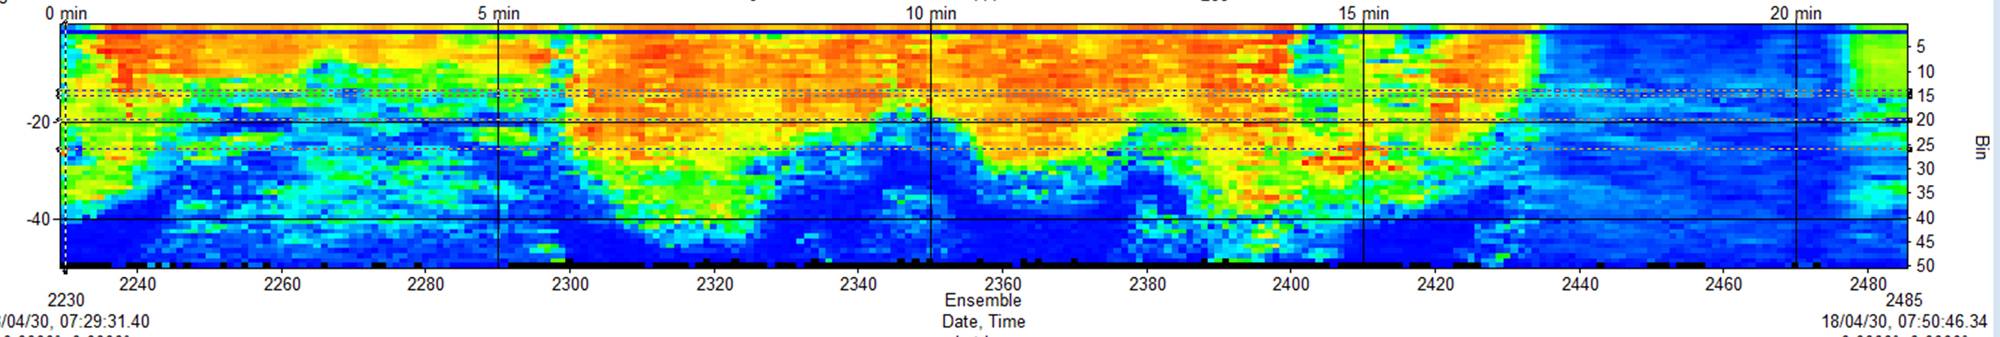 Islay Sound ADCP-Daten. Bild von MarynSol.